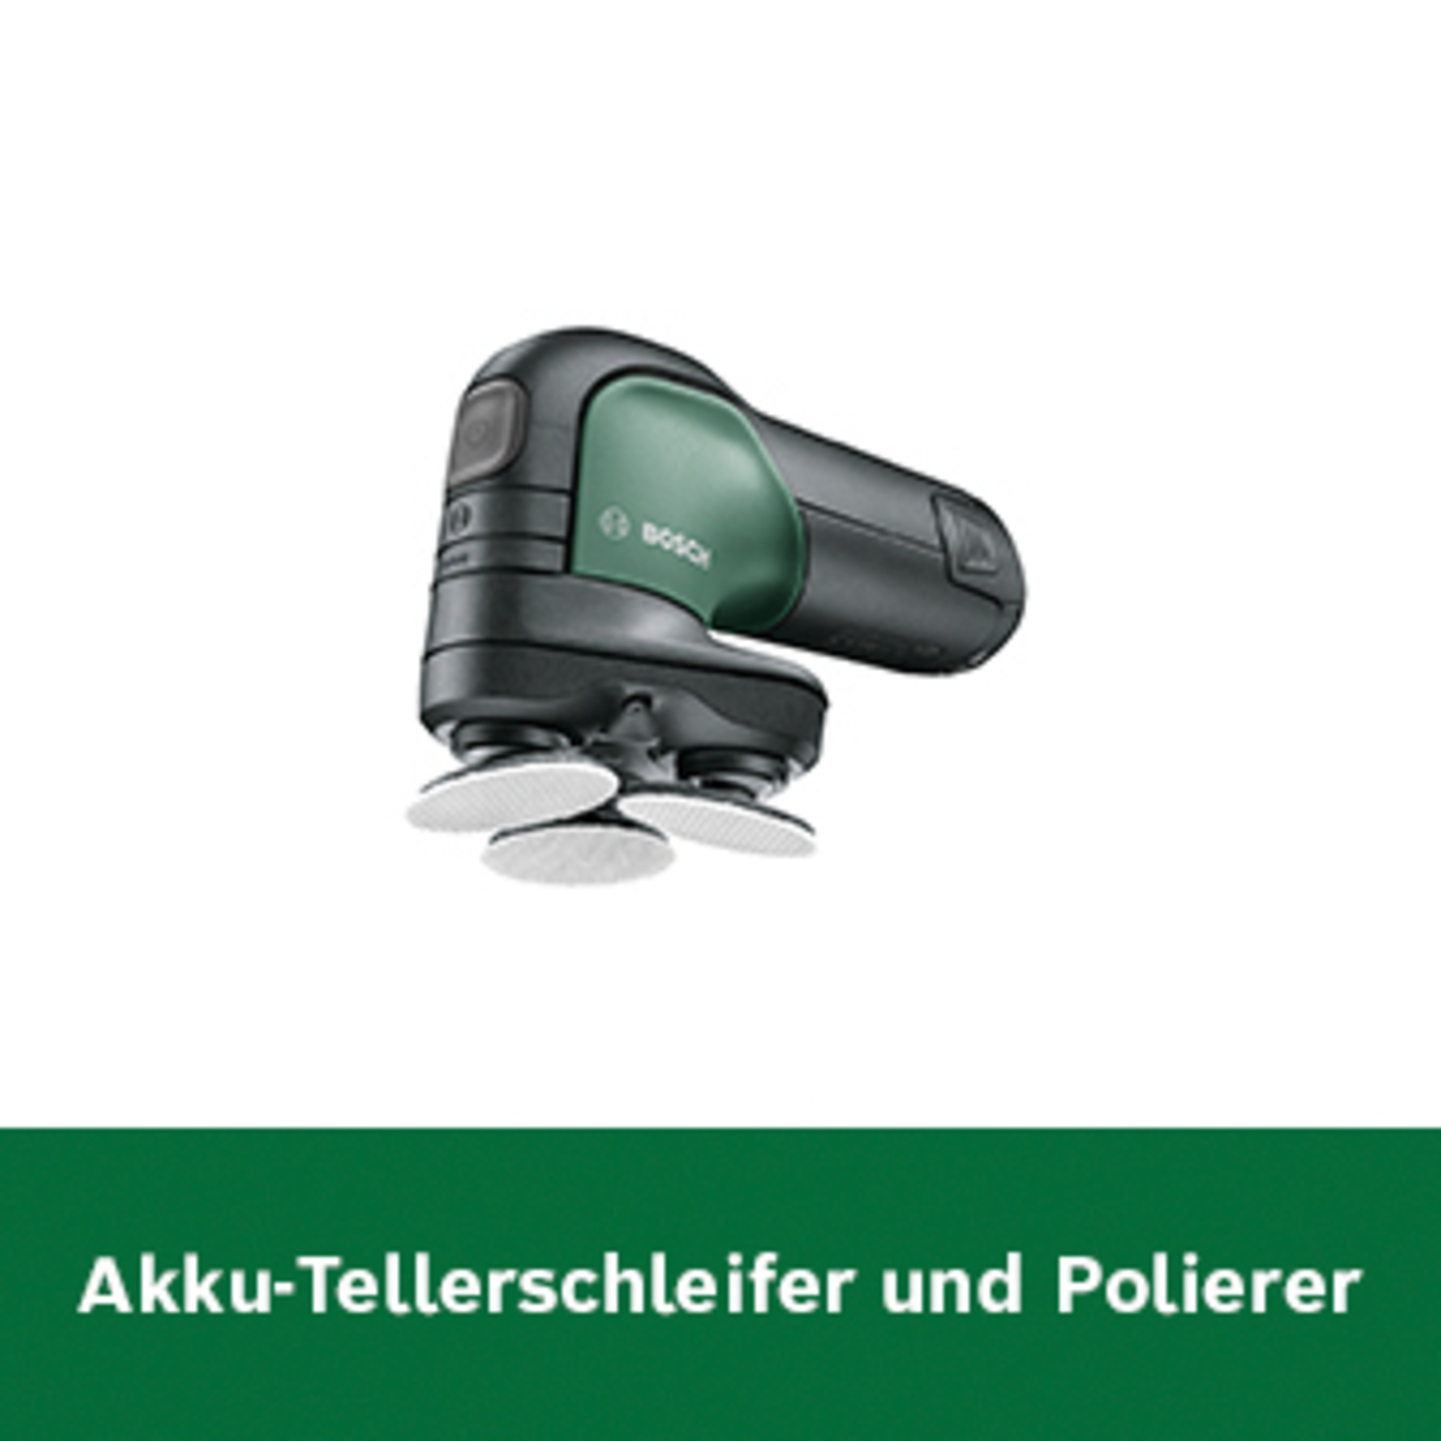 Bosch Akku-Tellerschleifer und Polierer